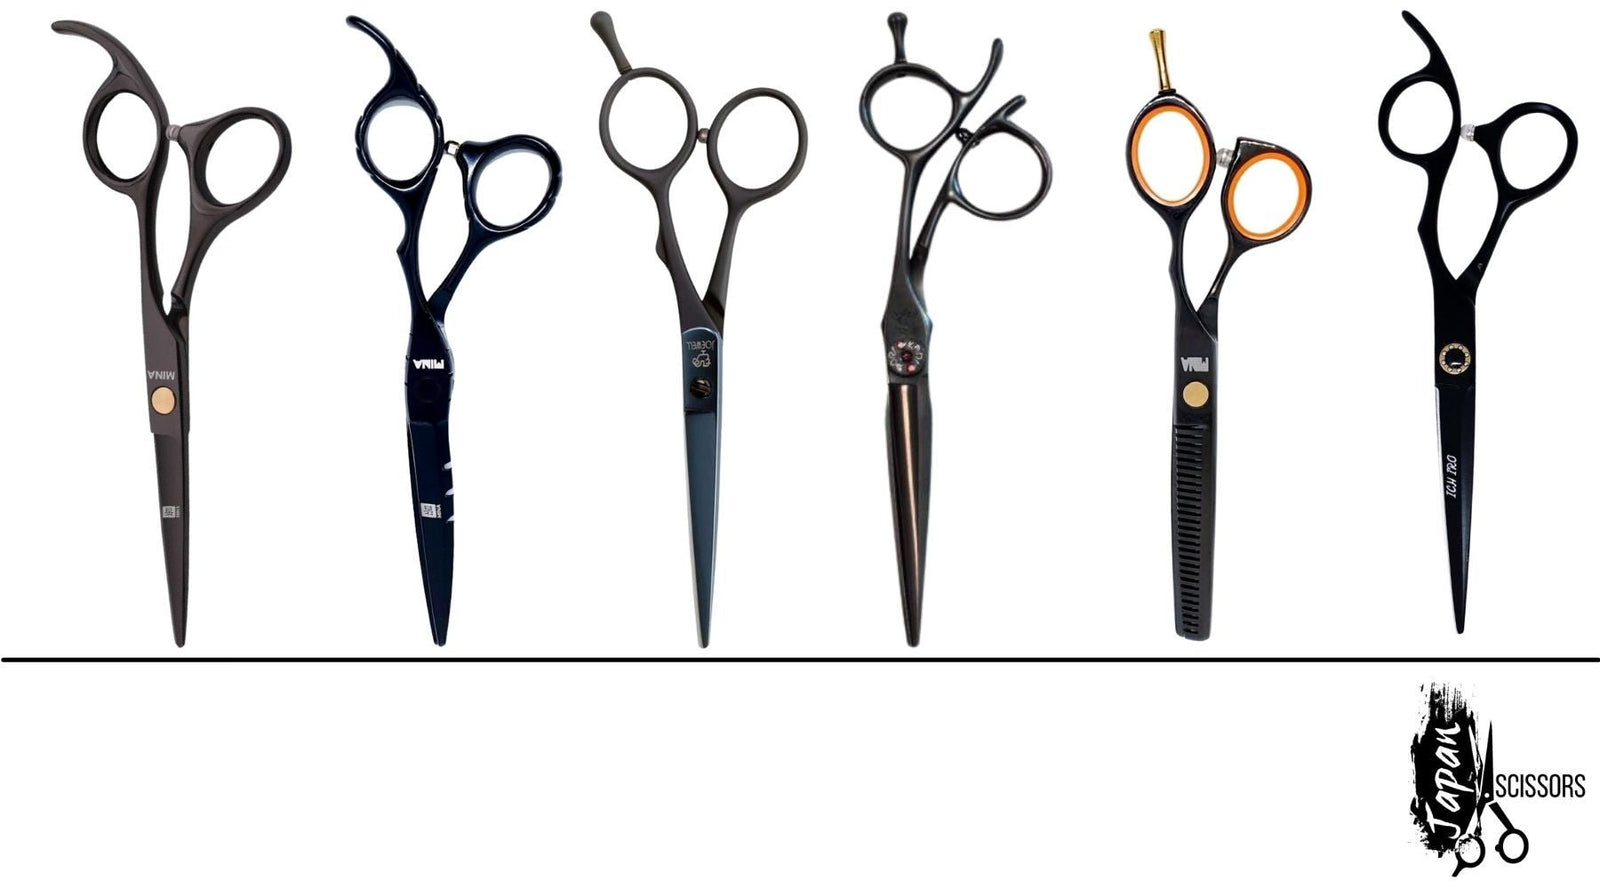 Black Hairdressing Scissors - Matte Black, Polished Black & More - Japan  Scissors USA